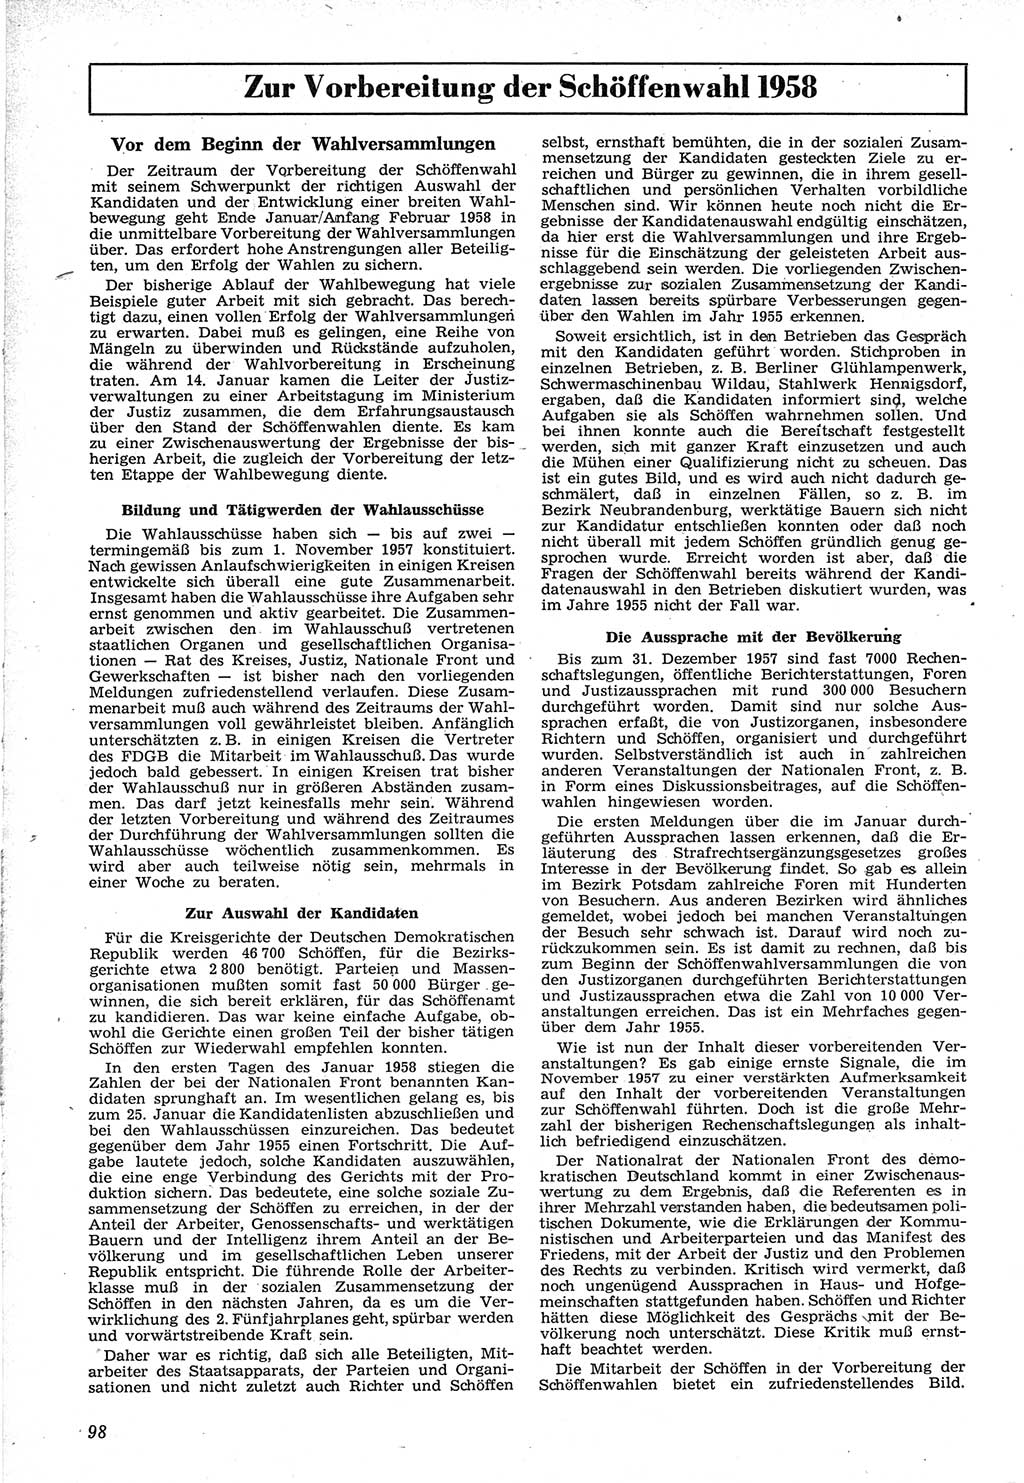 Neue Justiz (NJ), Zeitschrift für Recht und Rechtswissenschaft [Deutsche Demokratische Republik (DDR)], 12. Jahrgang 1958, Seite 98 (NJ DDR 1958, S. 98)